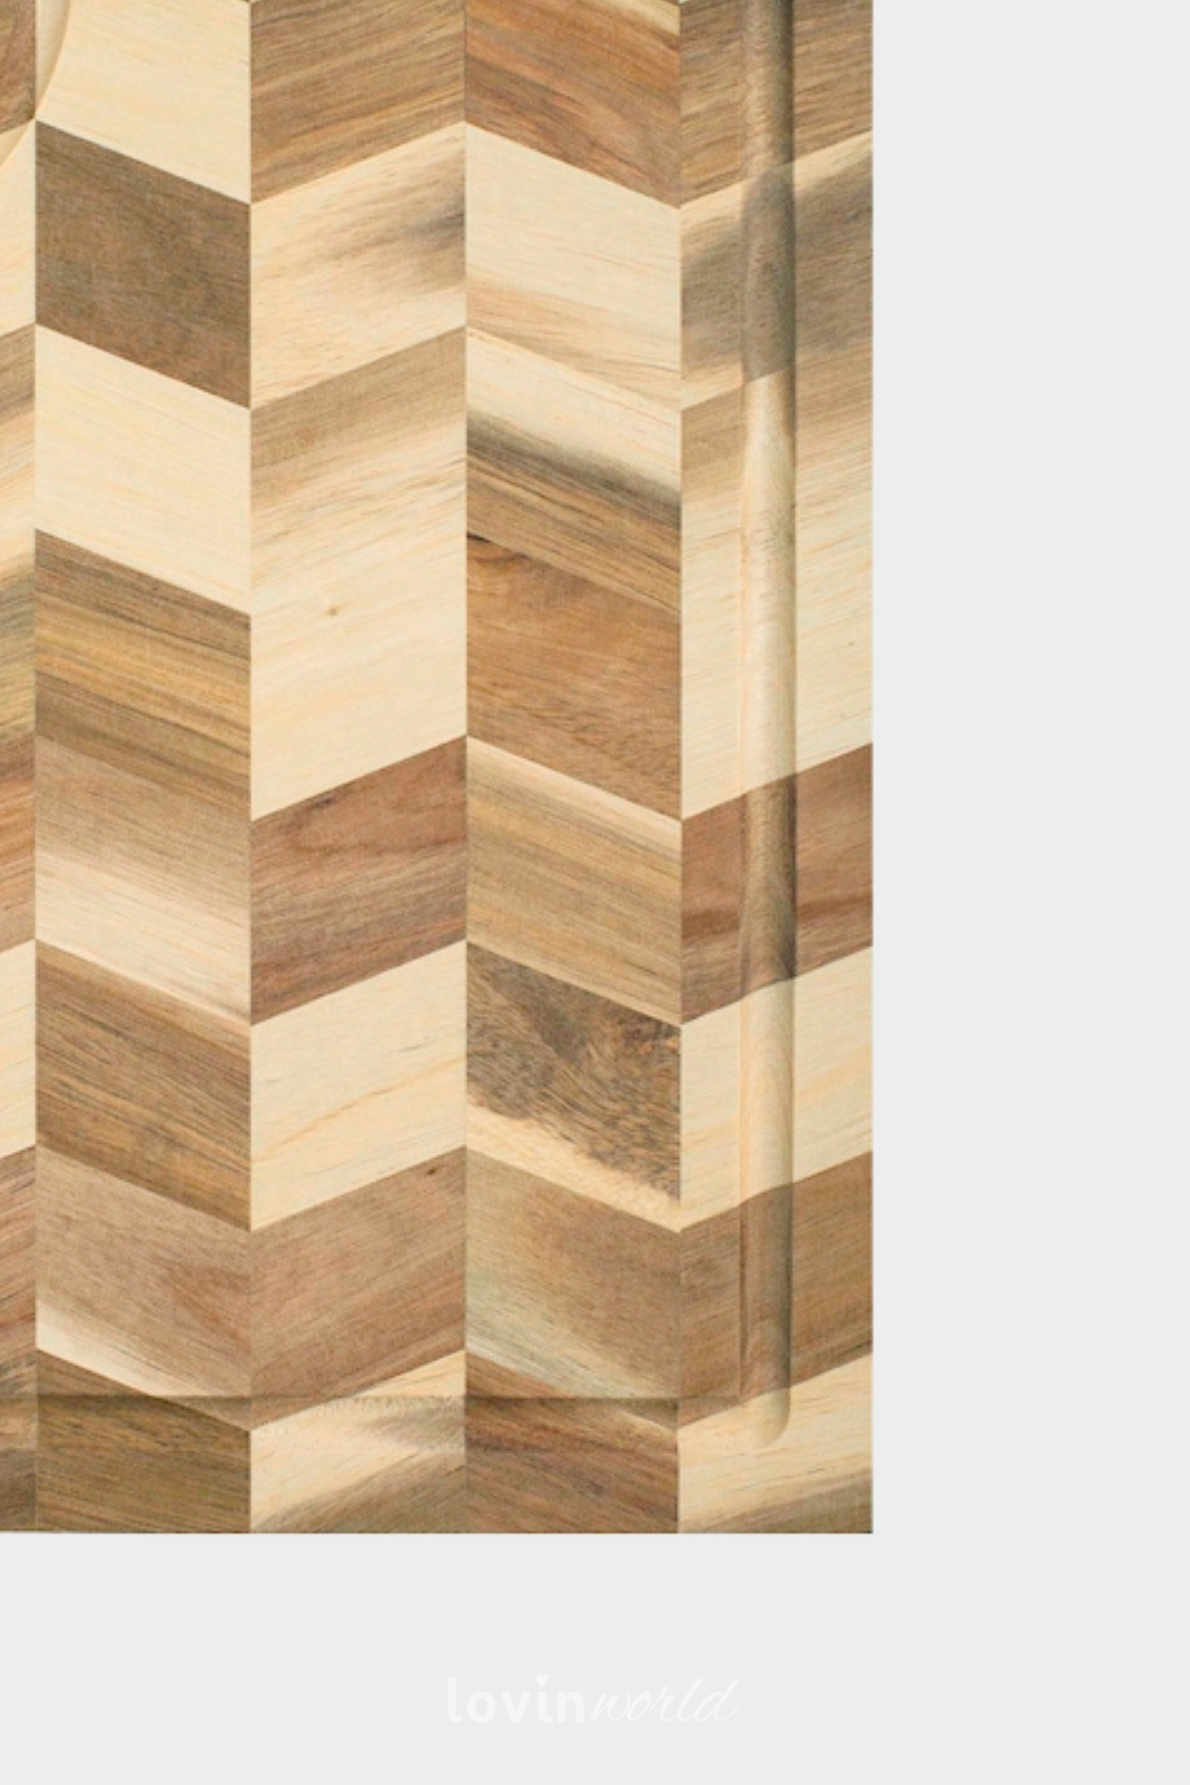 Tagliere rettangolare in legno acacia, 32x24 cm.-3